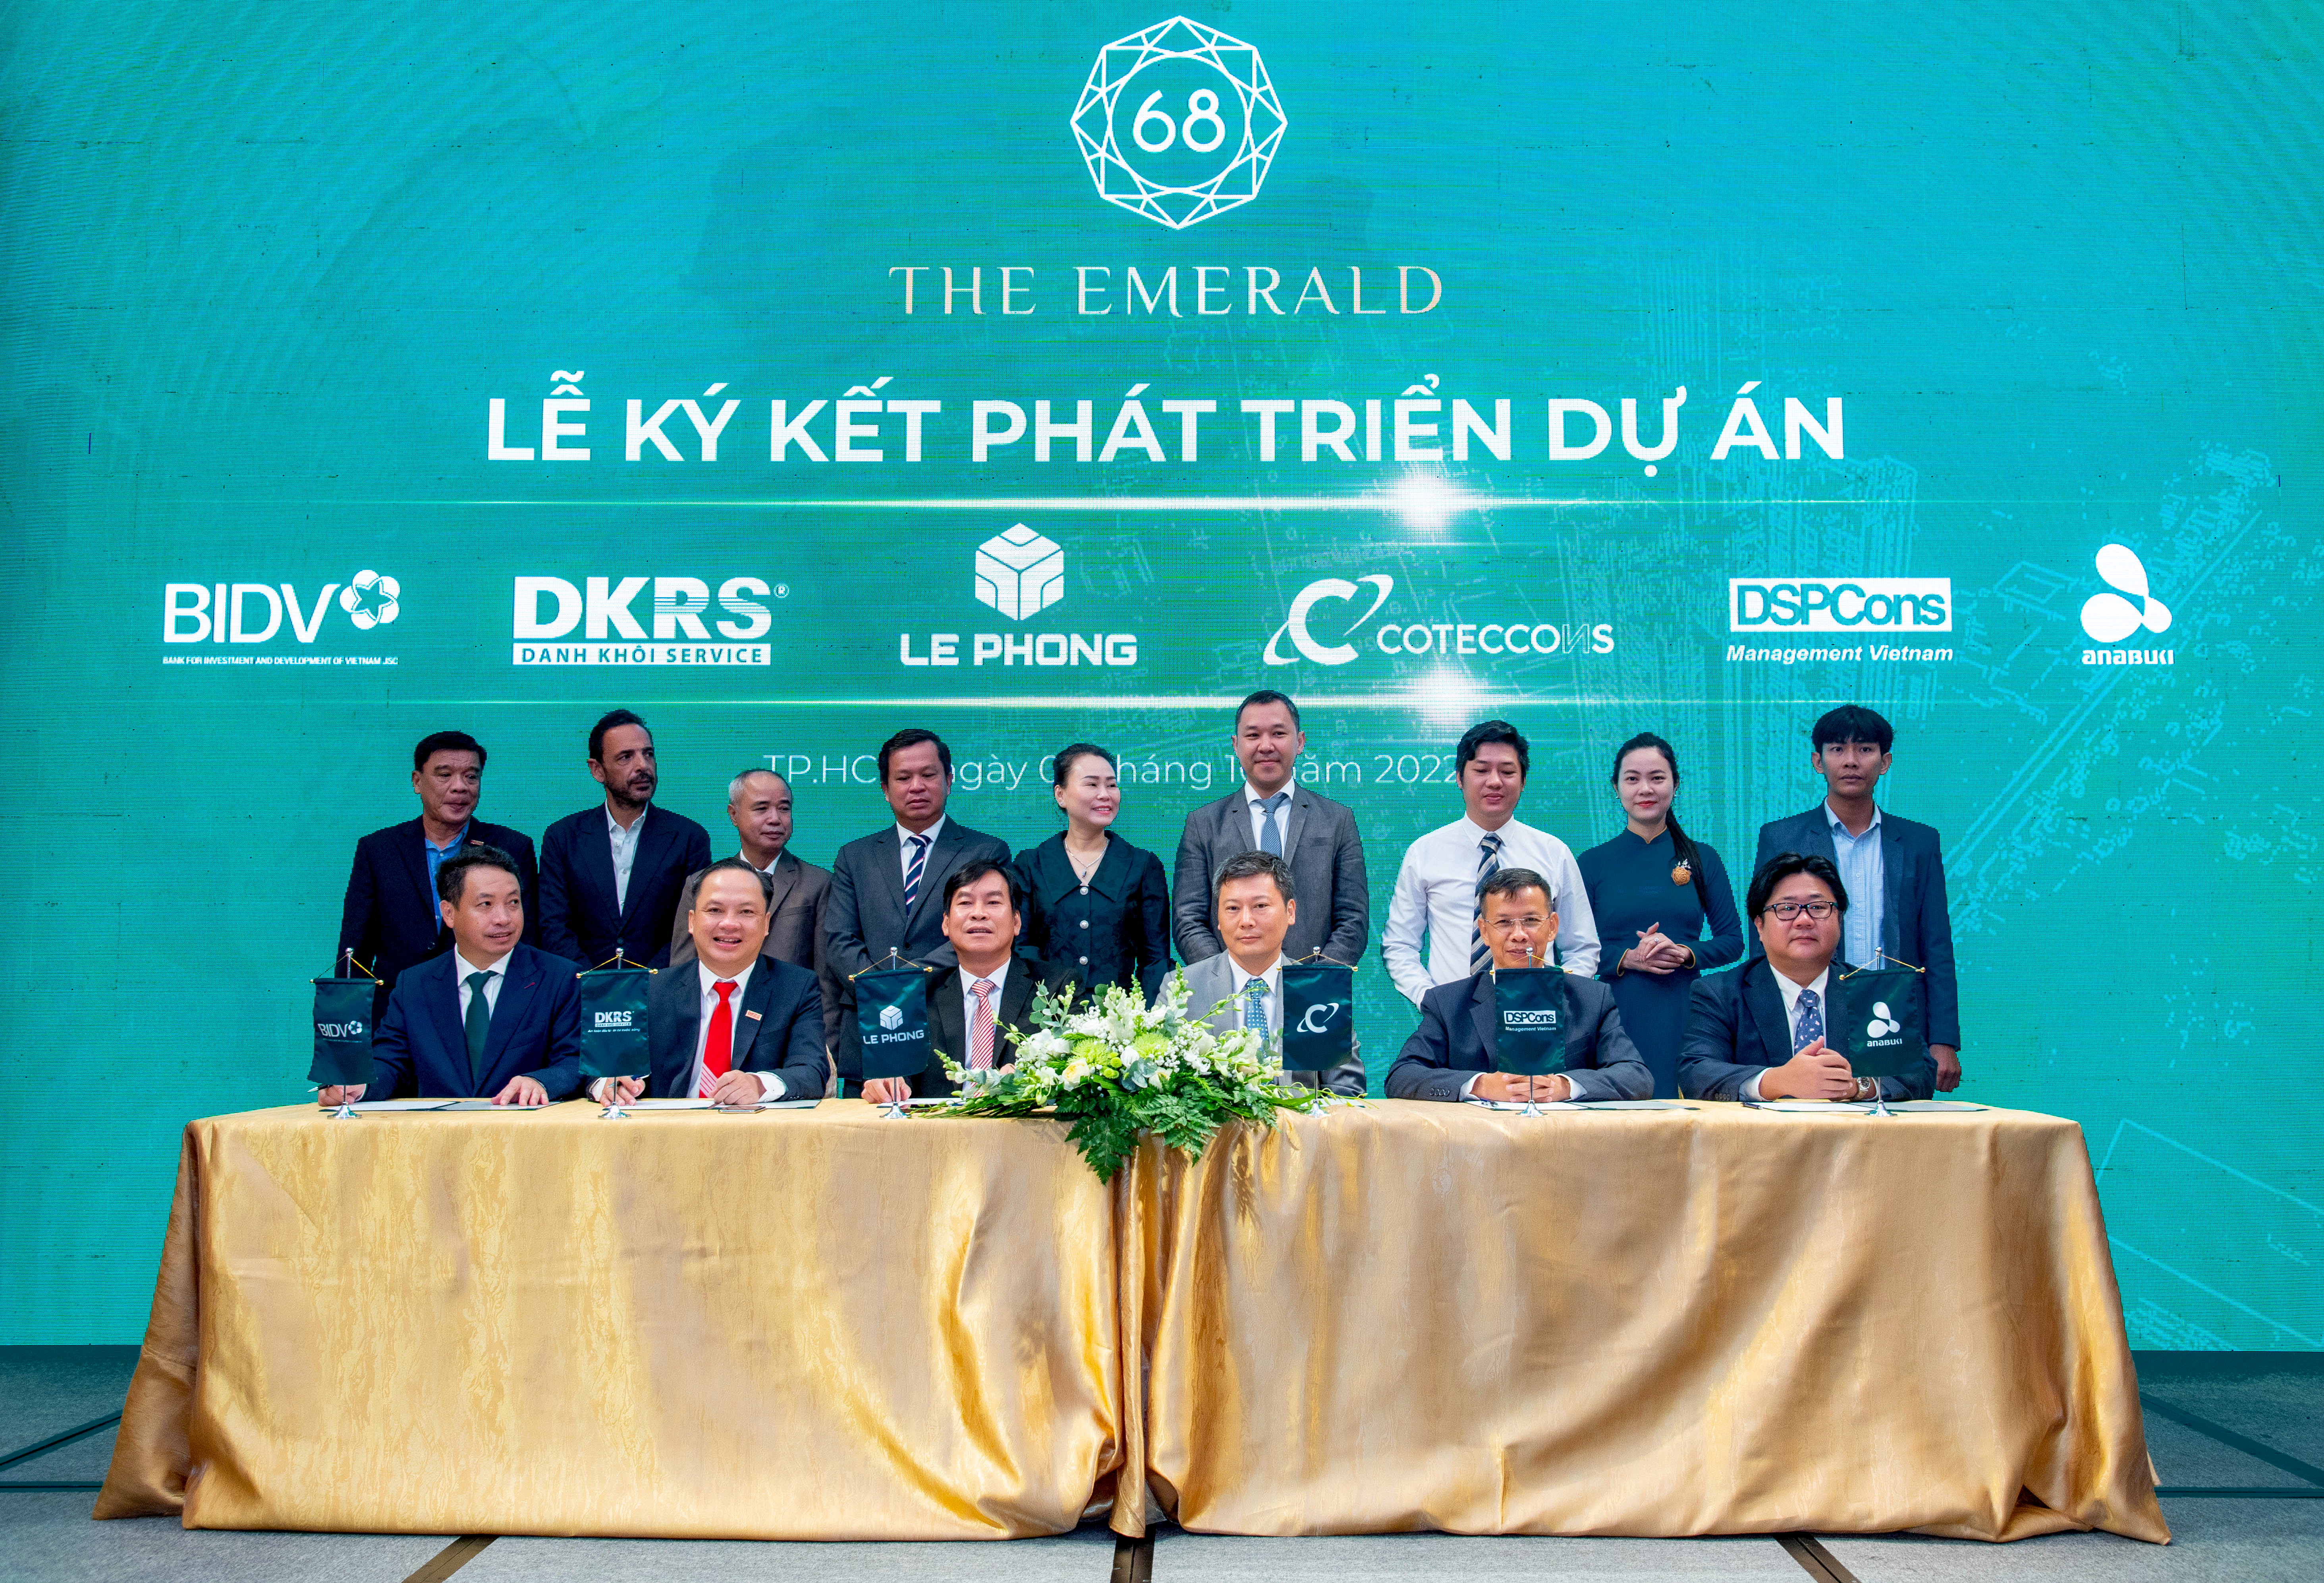 Tập đoàn Lê Phong vừa ký kết phát triển dự án căn hộ cao cấp The Emerald 68 tại Bình Dương với các đối tác Coteccons và Công ty DSPcons Việt Nam, Công ty DKRS, Ngân hàng BIDV...